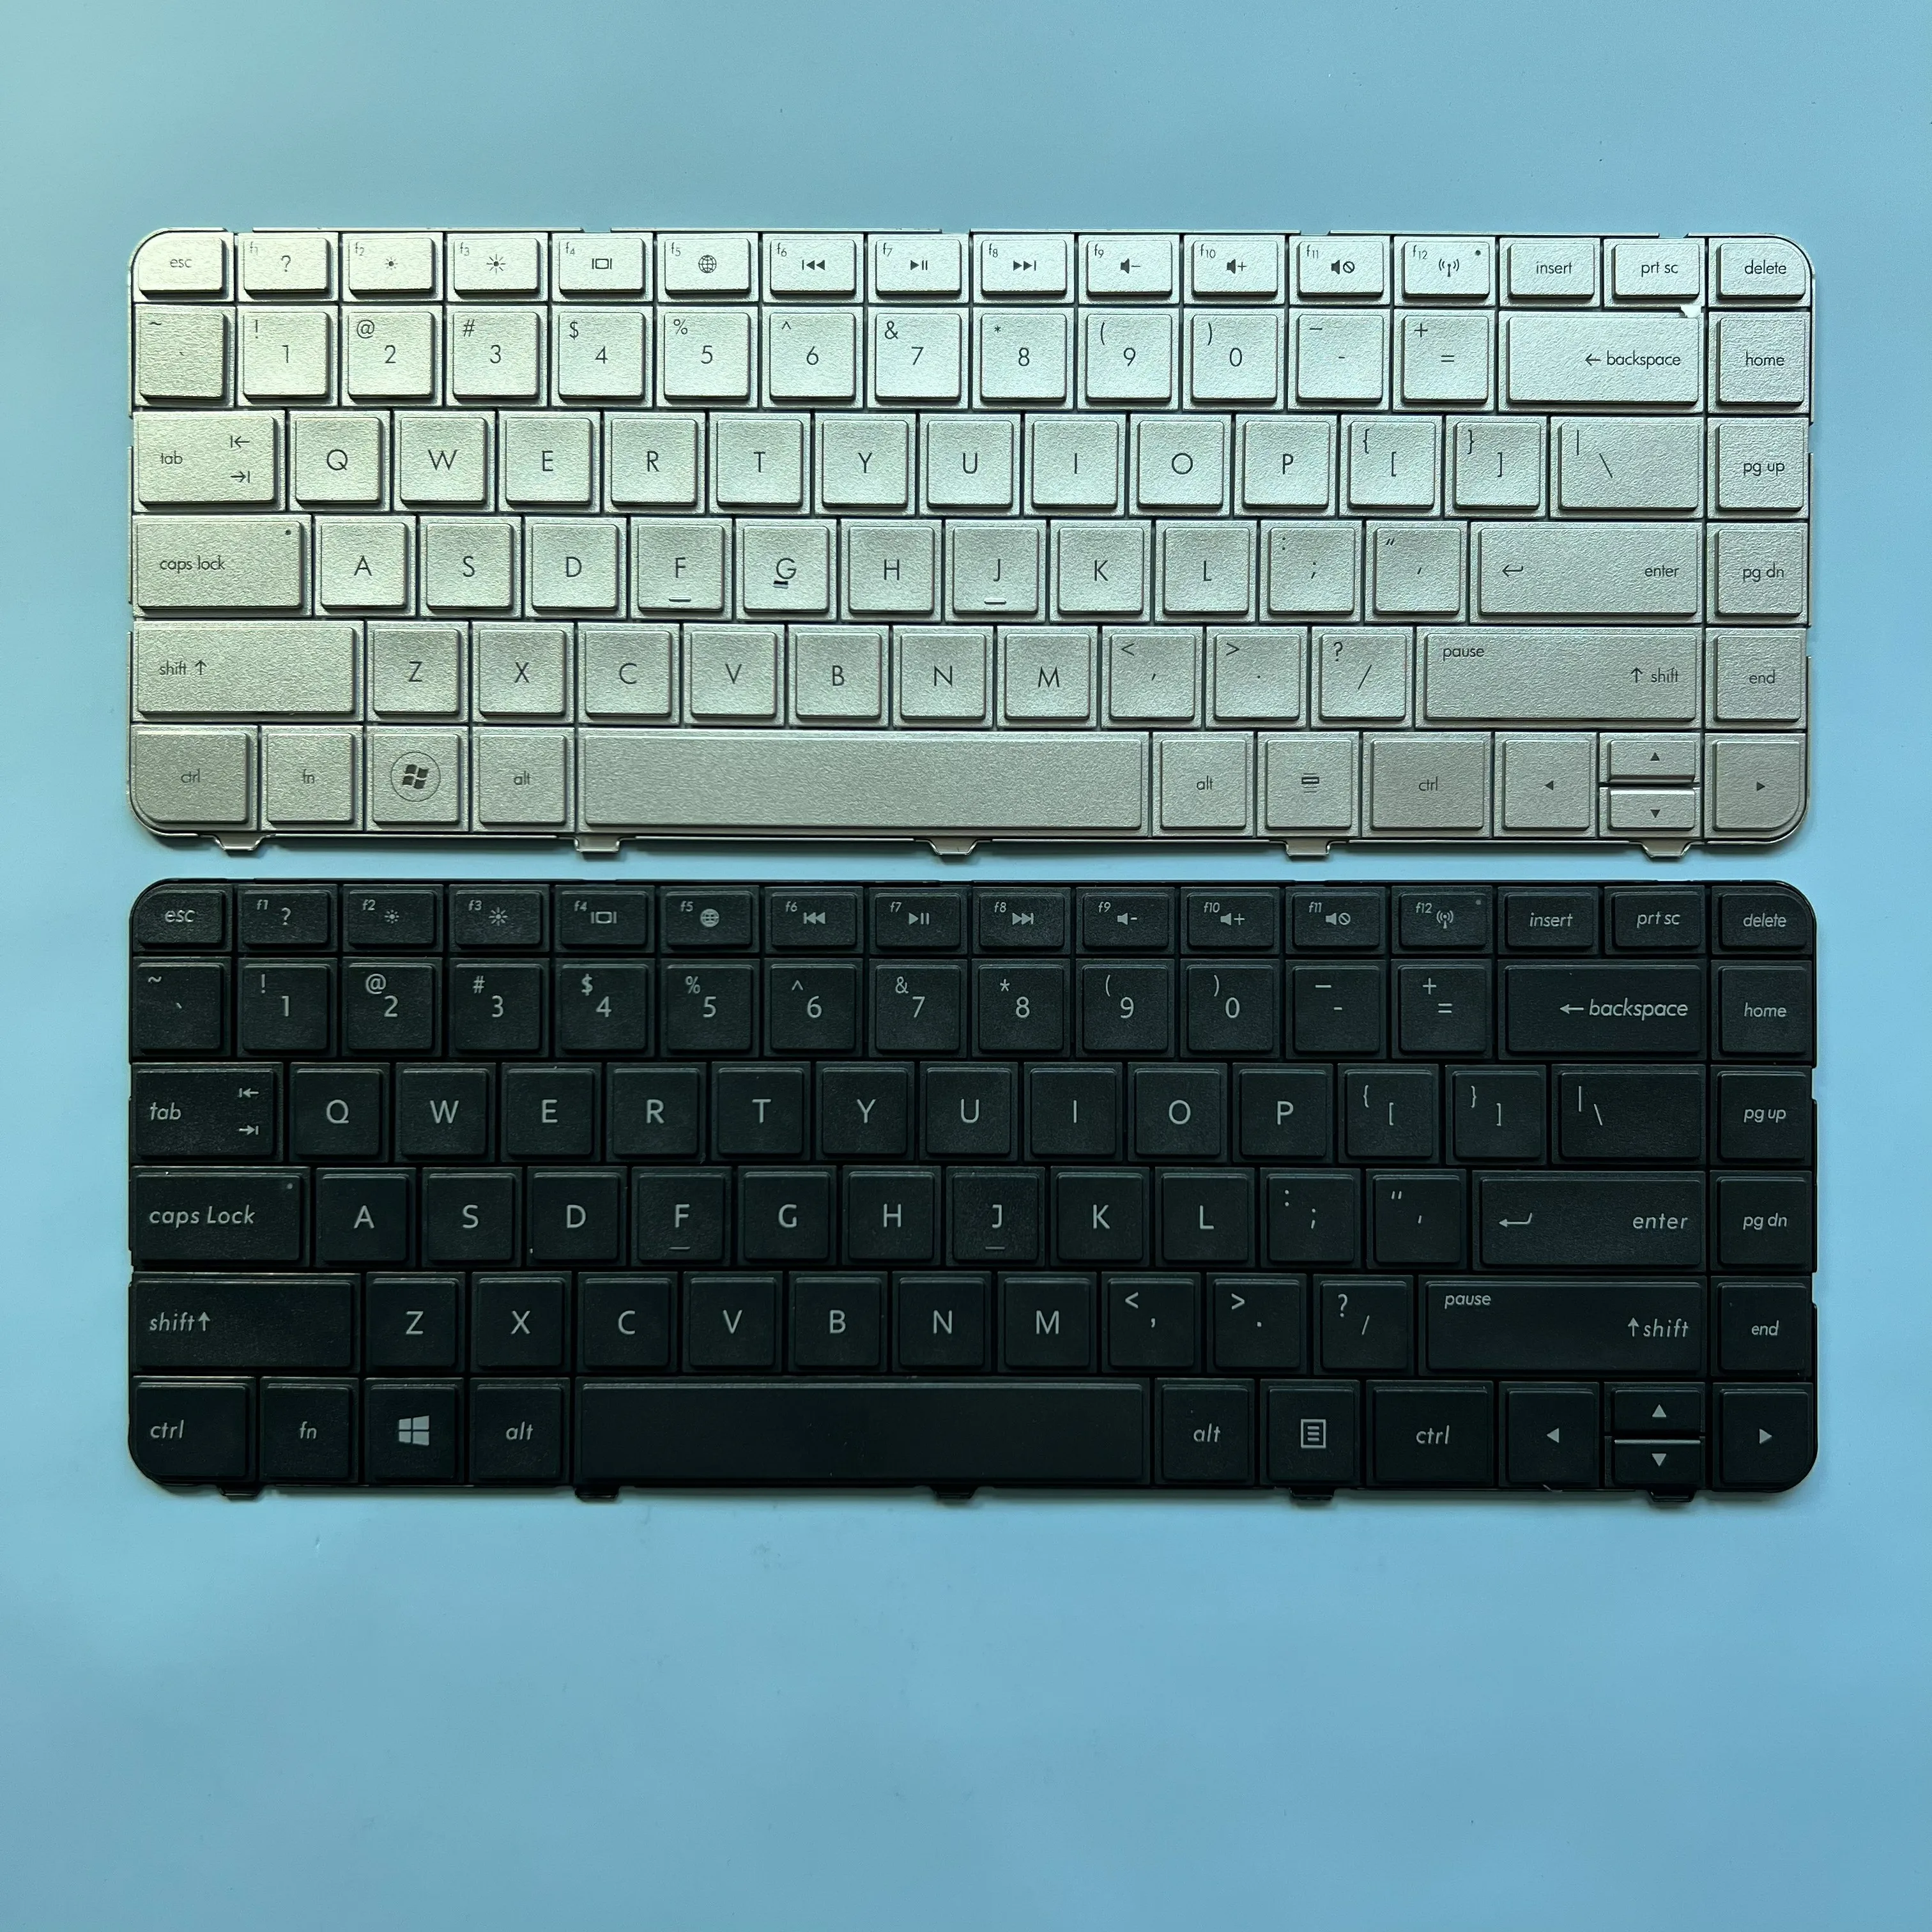 

XIN US Keyboard For HP Pavilion G4 G4-1000 G6 G6-1000 CQ43 CQ57 CQ58 430 431 630 G43 G57 G6T Laptop English Silver V121046BS1